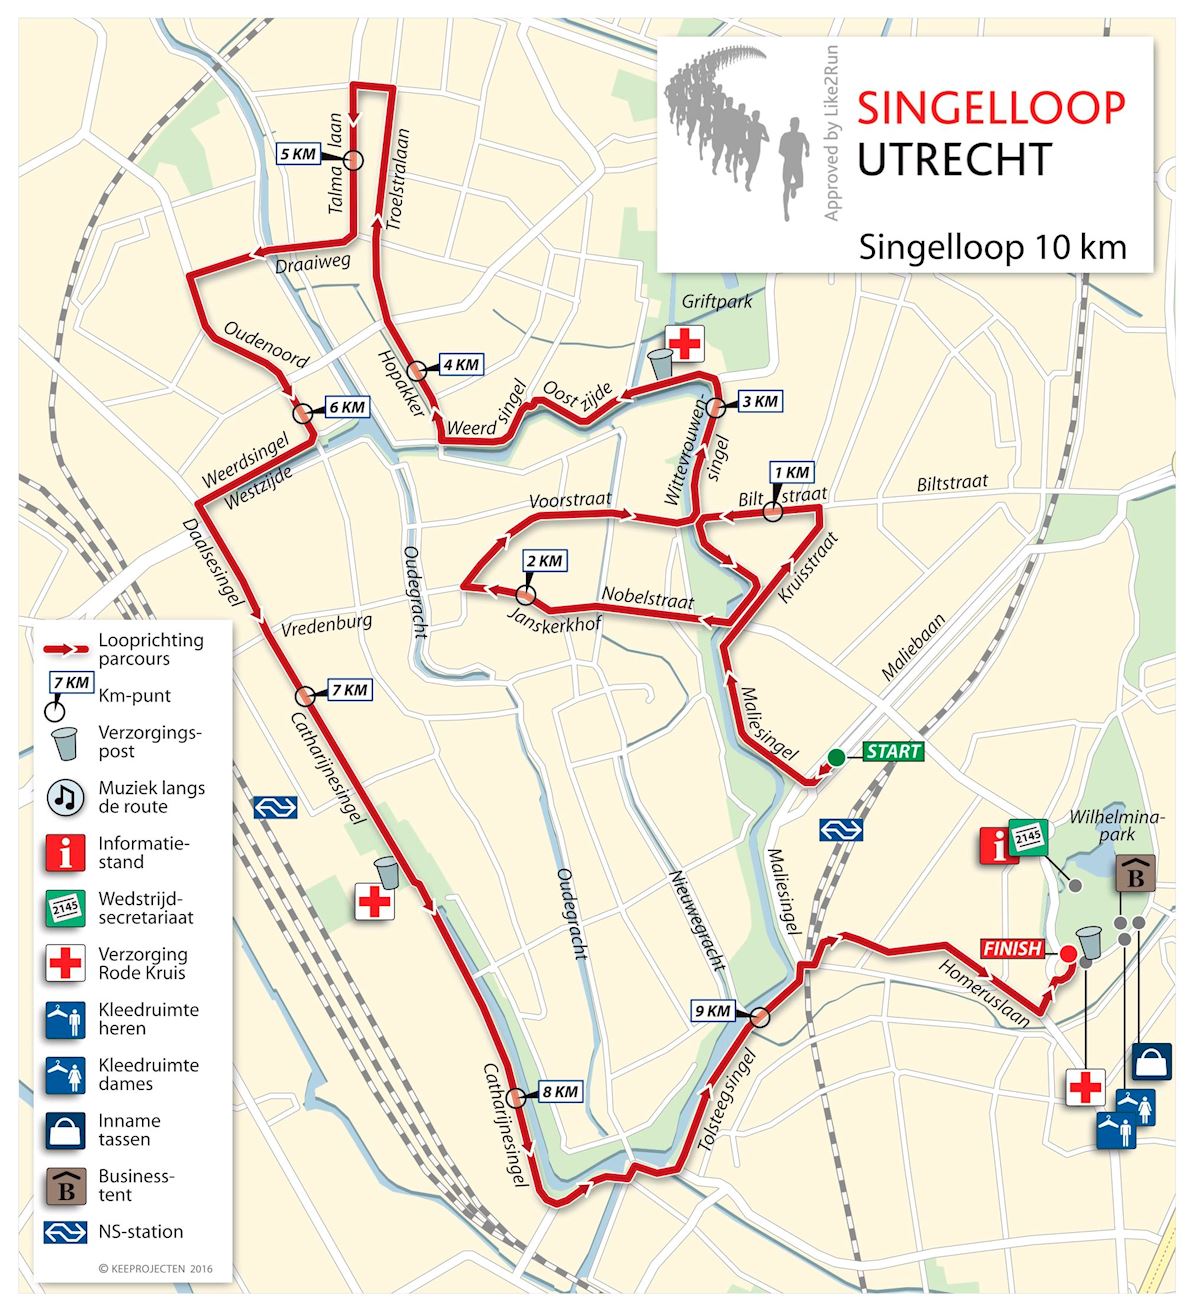 Singelloop Utrecht 路线图